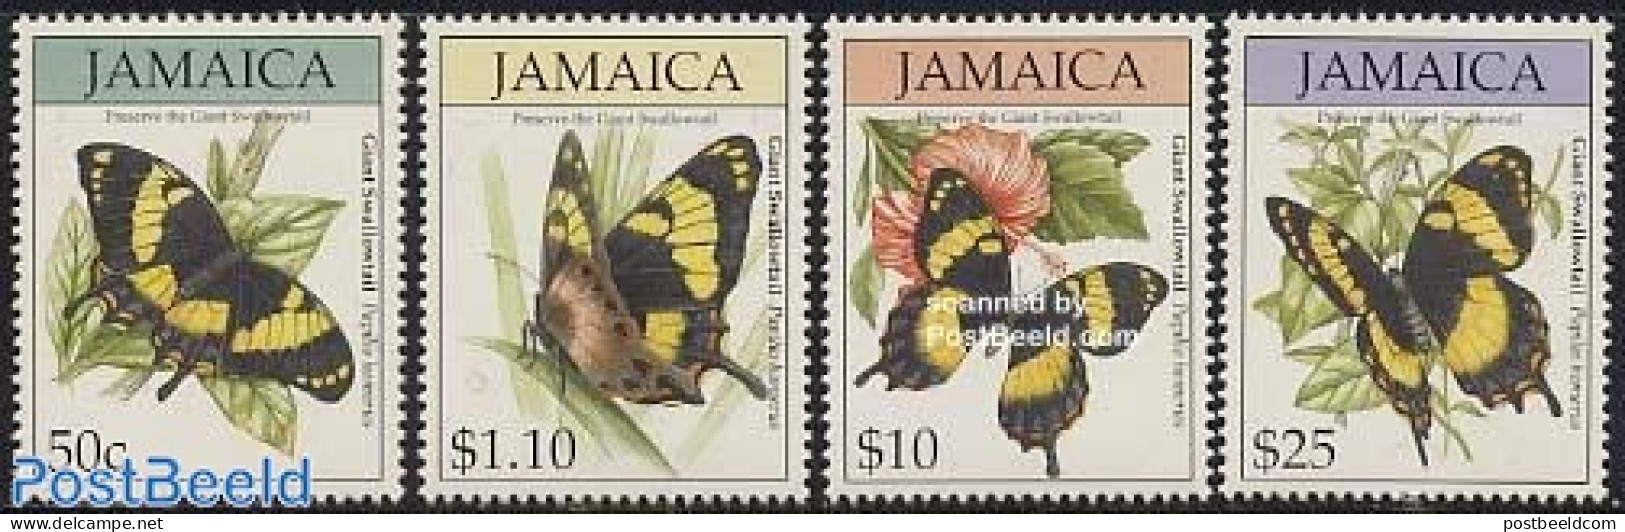 Jamaica 1994 Butterflies 4v, Mint NH, Nature - Butterflies - Jamaique (1962-...)